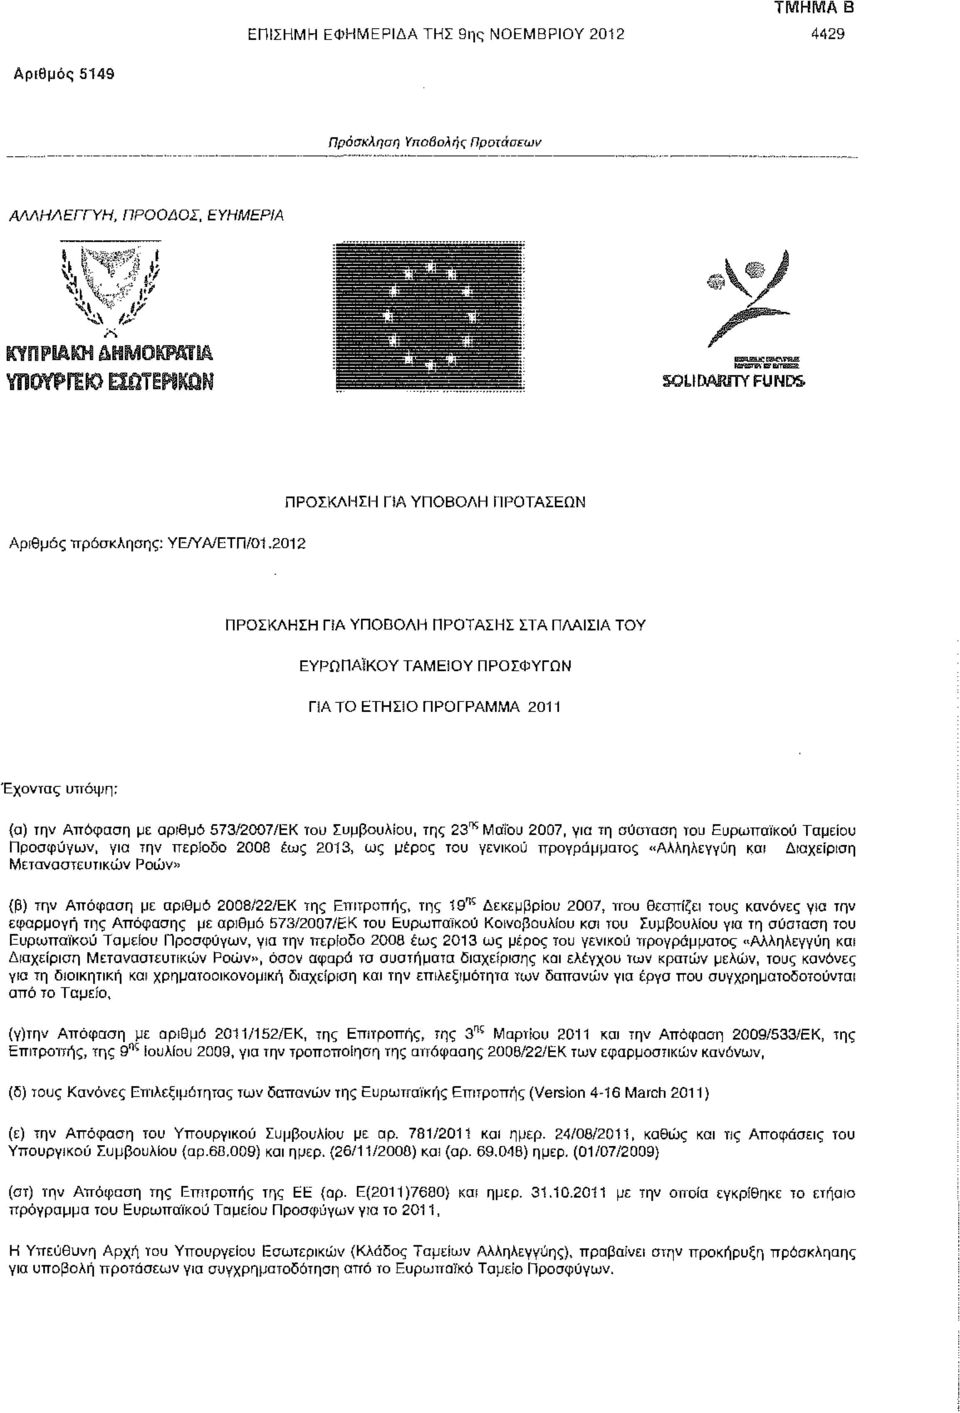 Συμβουλίου, της 23^ Μαΐου 2007, γιο τη σύσταση του Ευρωπαϊκού Ταμείου Προσφύγων, για την περίοδο 2008 έως 2013, ως μέρος του γενικού προγράμματος "Αλληλεγγύη και Διαχείριση Μεταναστευτικών Ροών» (β)